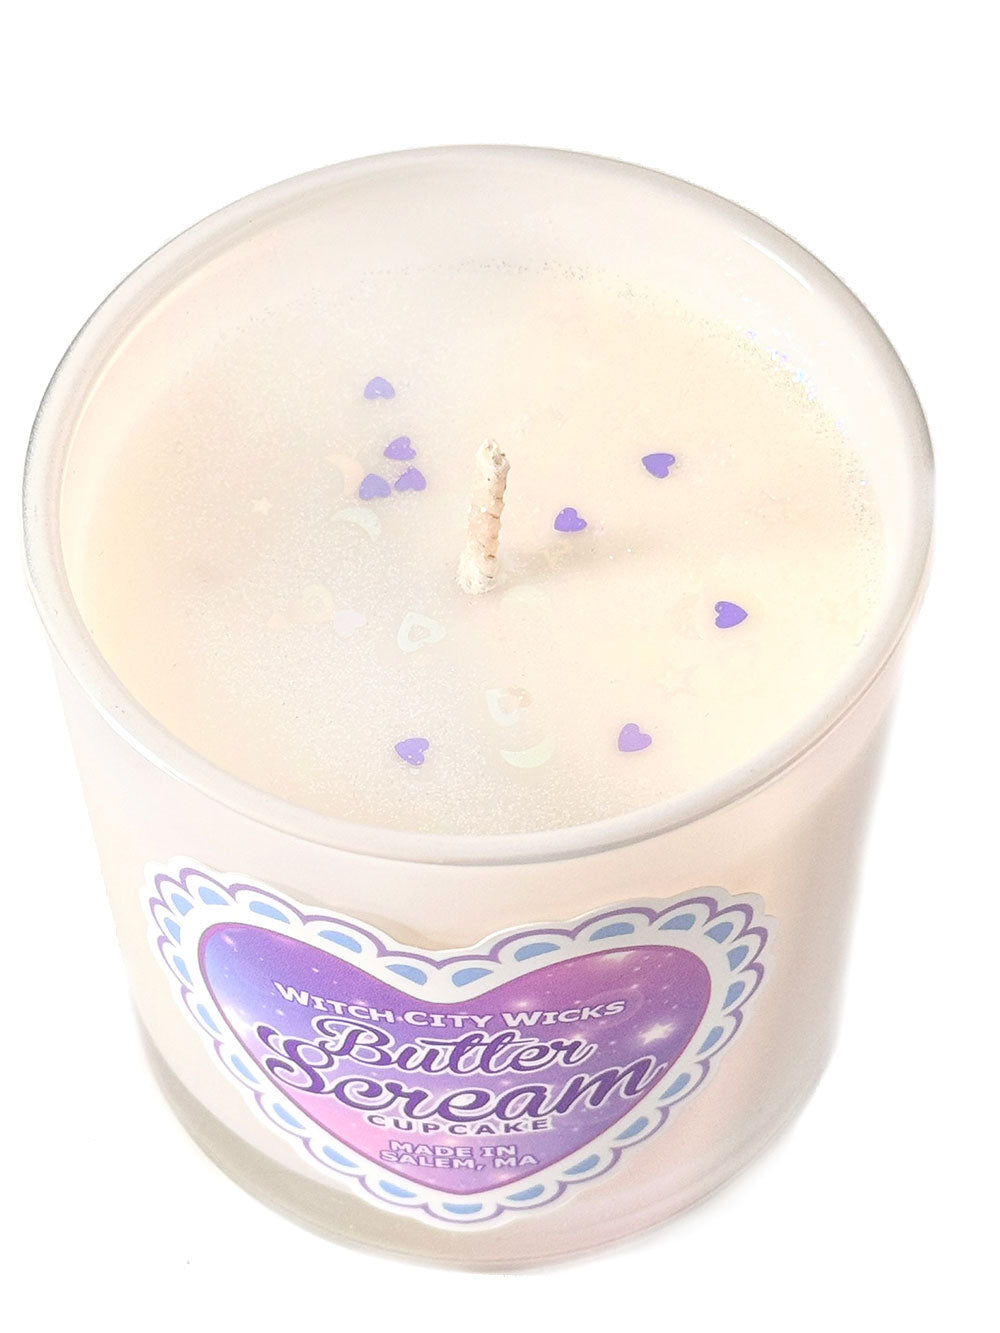 Butterscream Cupcake candle